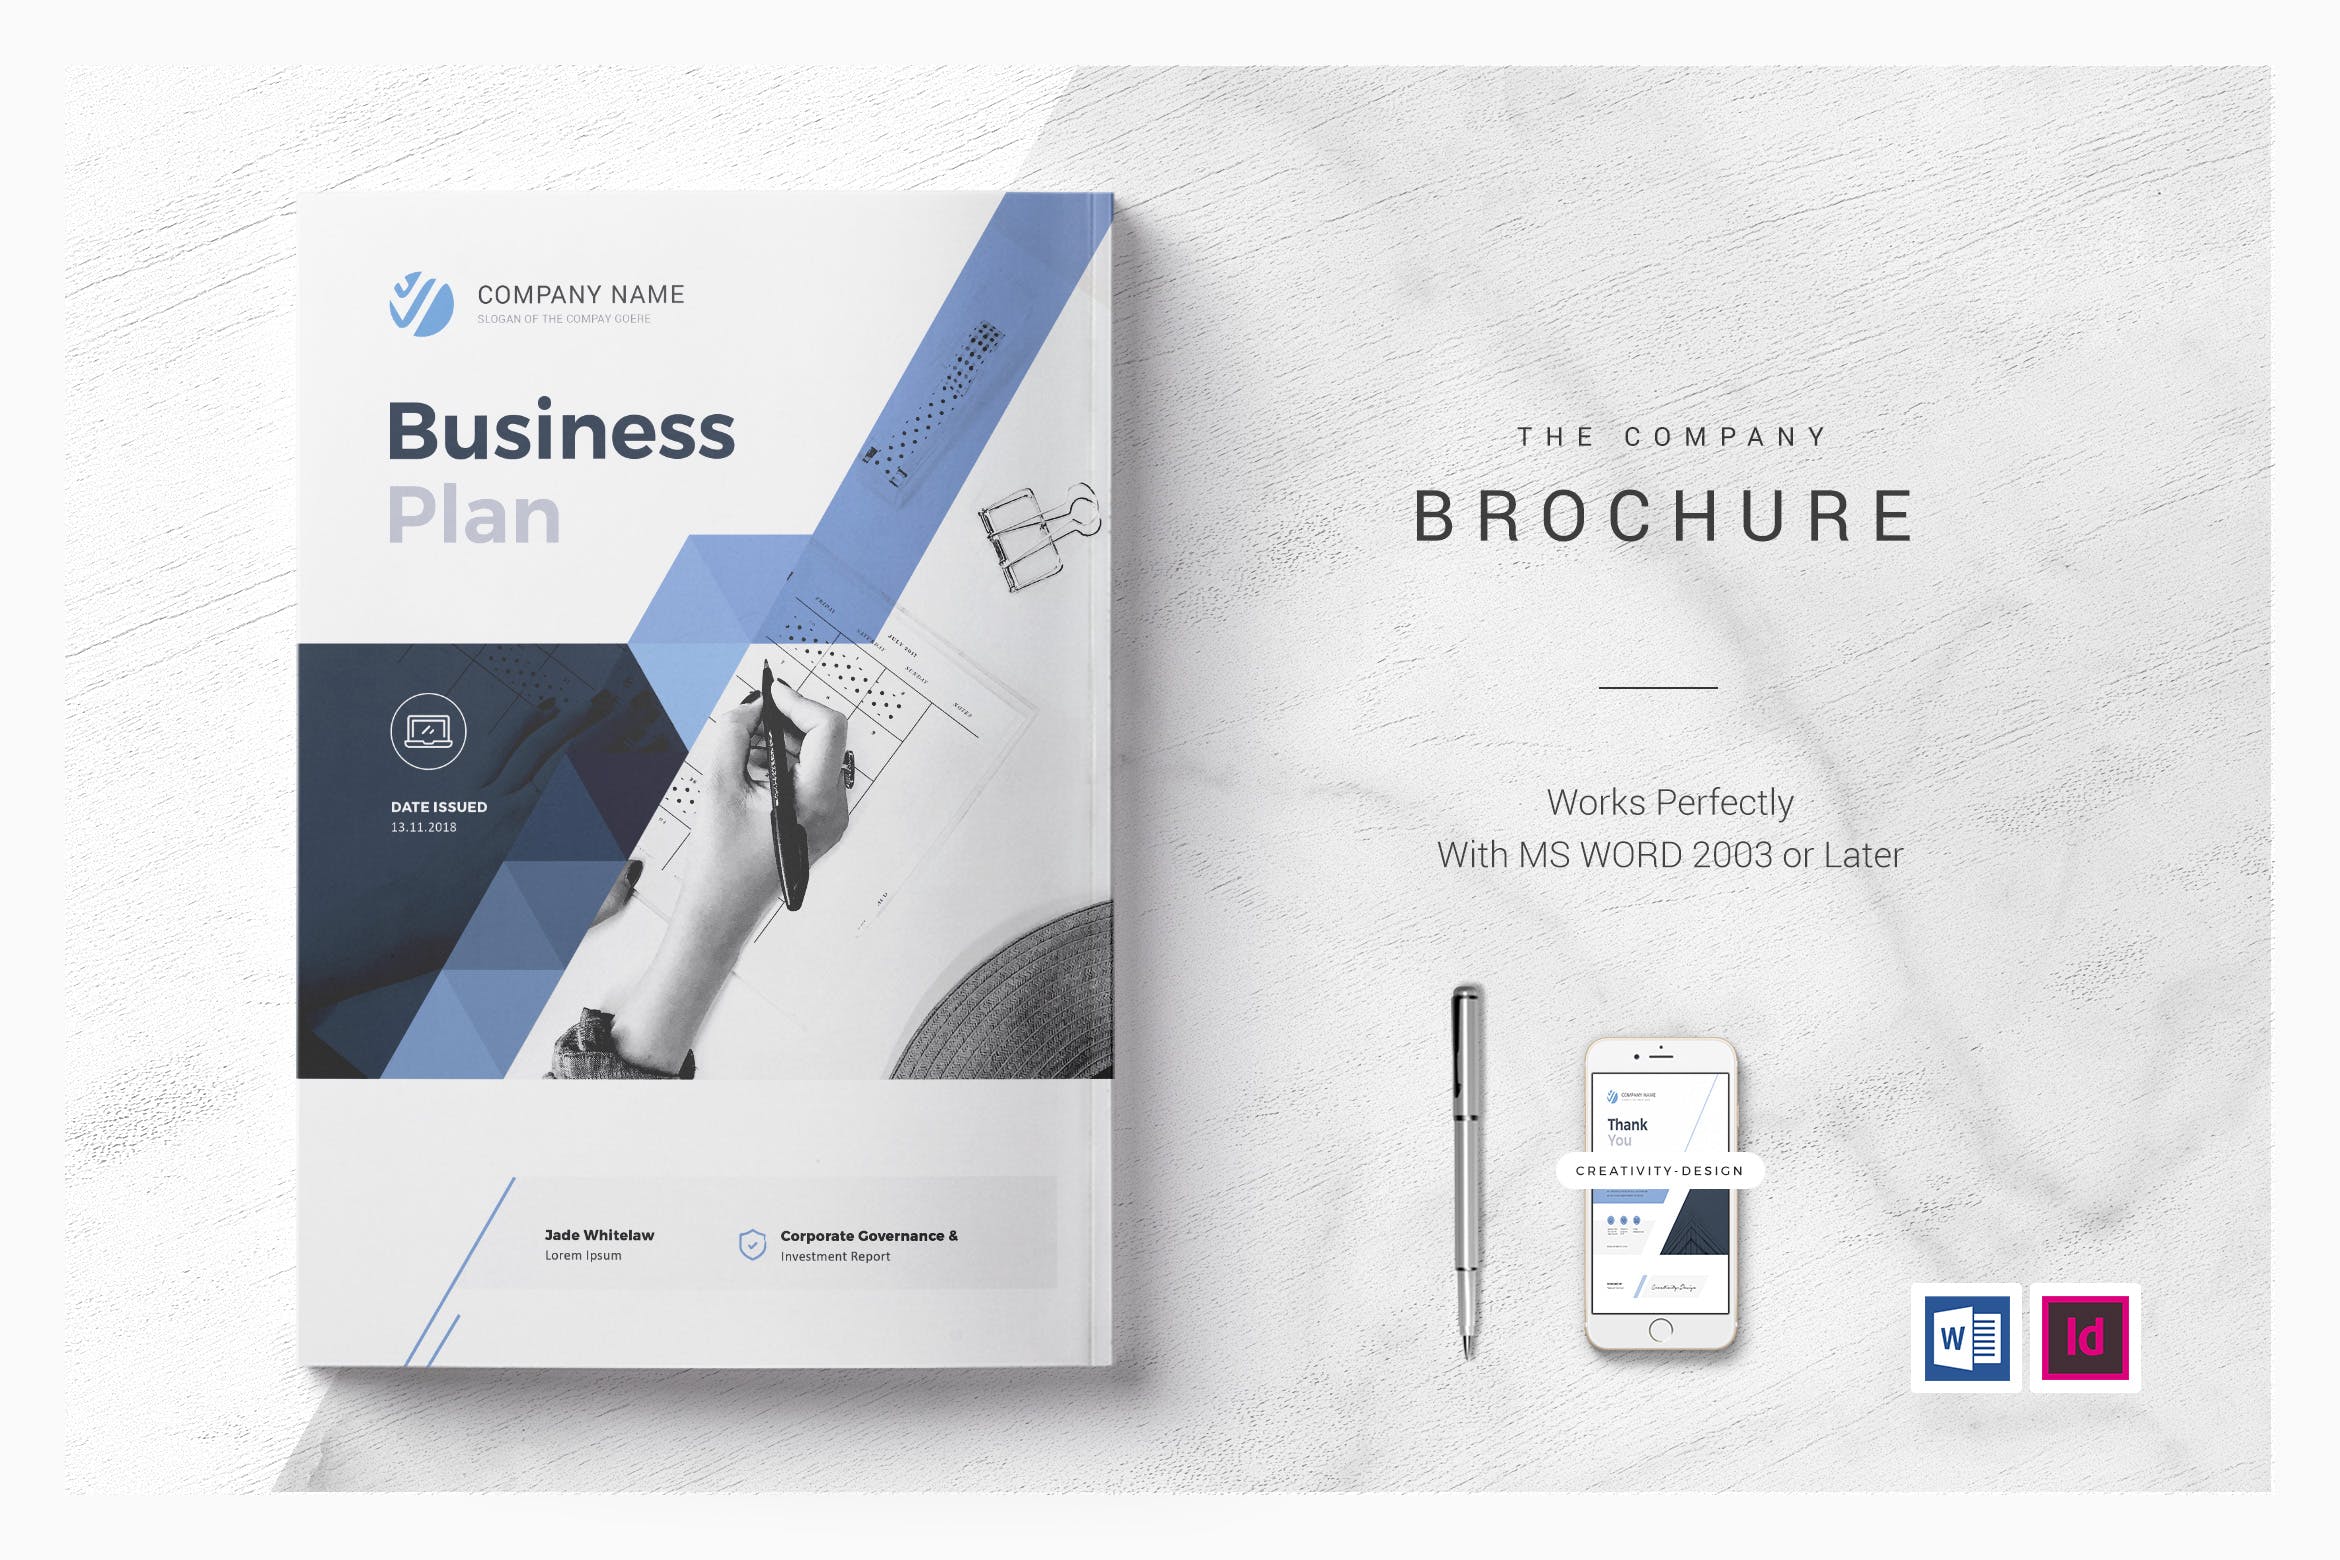 商业计划书/商业规划书设计模板 Business Plan插图